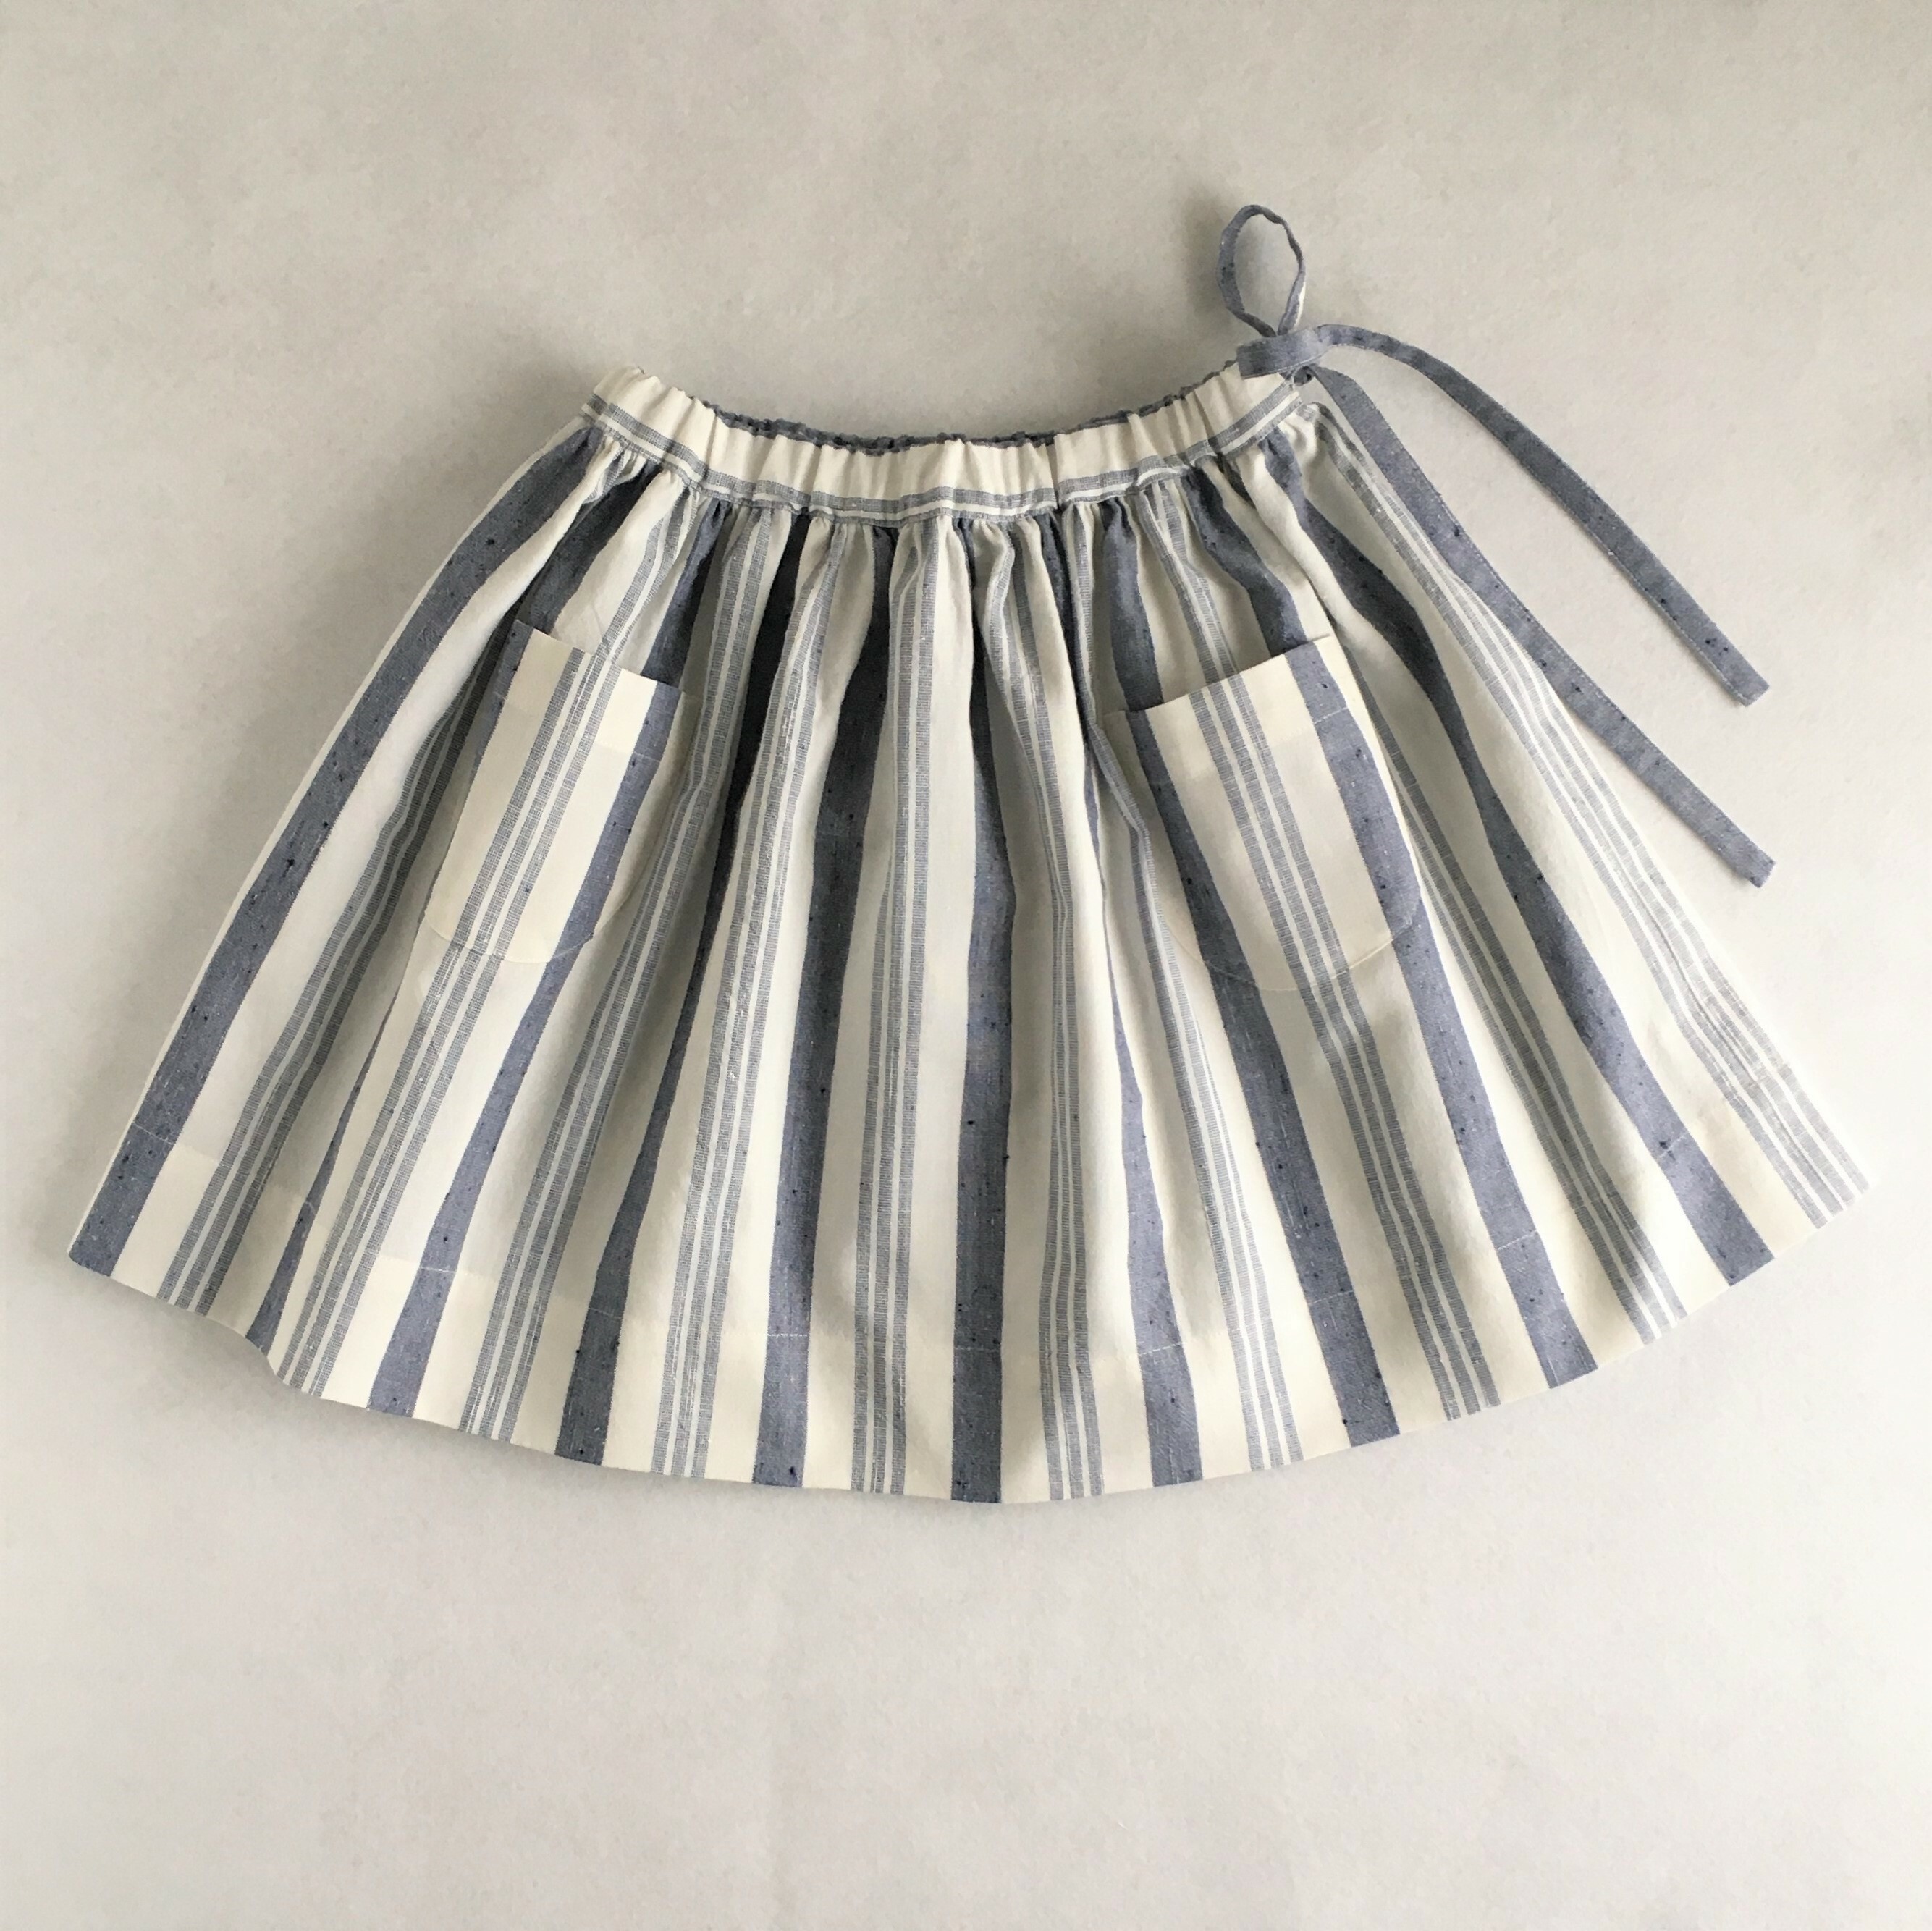 ギャザースカート 70 130サイズ 型紙 作り方のセット Bo 1905 子供服の型紙ショップ Tsukuro ツクロ